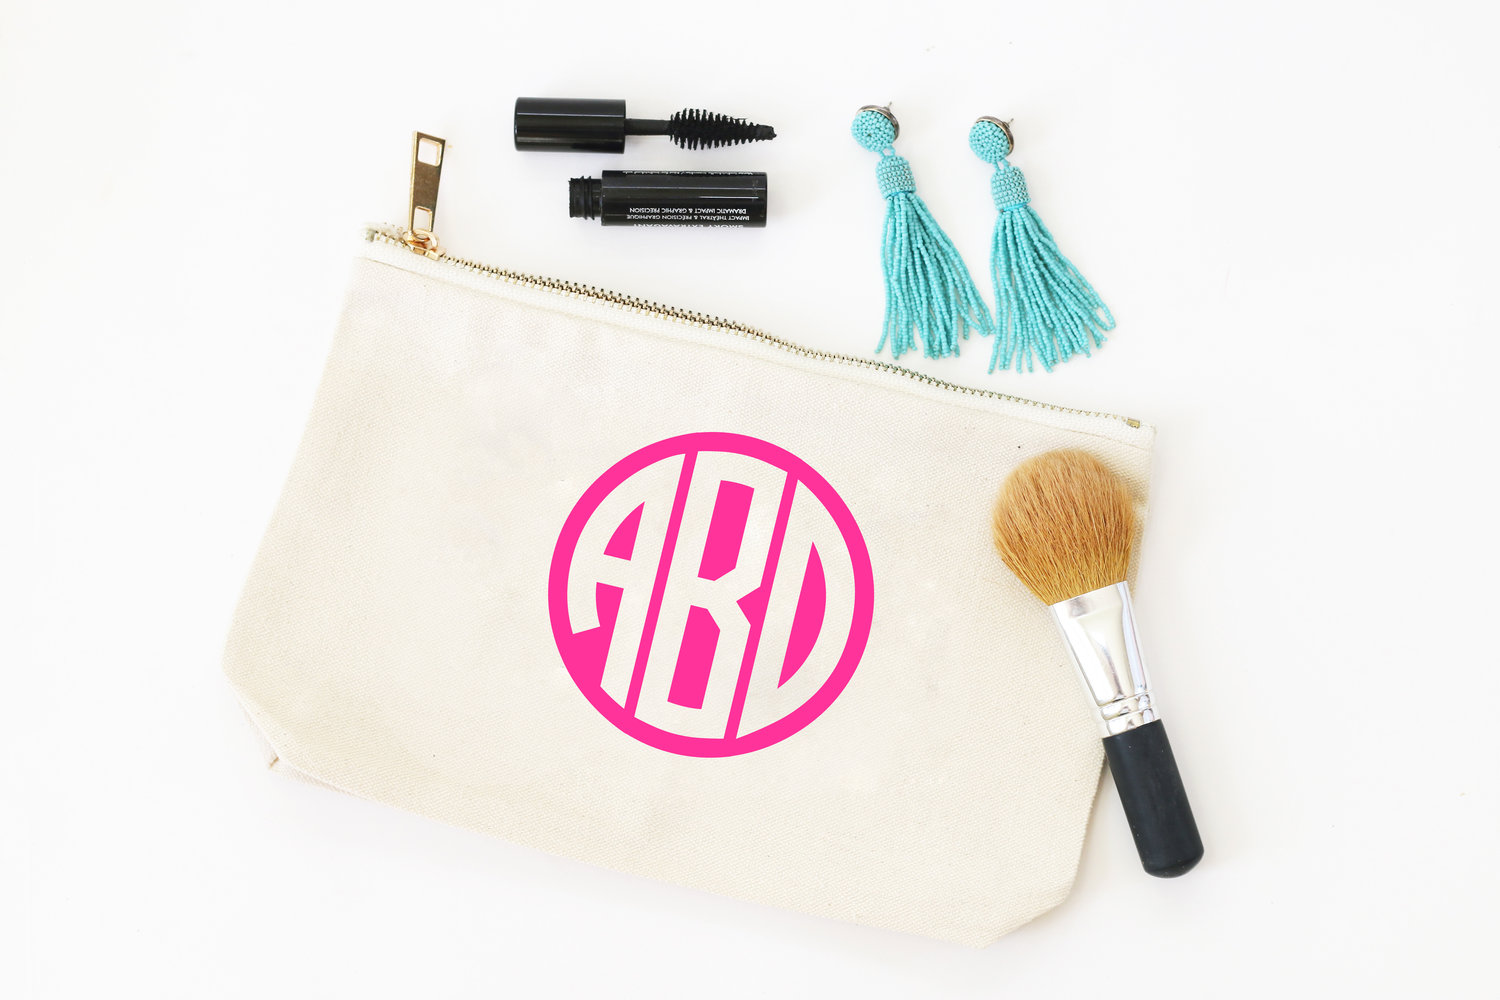 Monogrammed Make-Up Bag